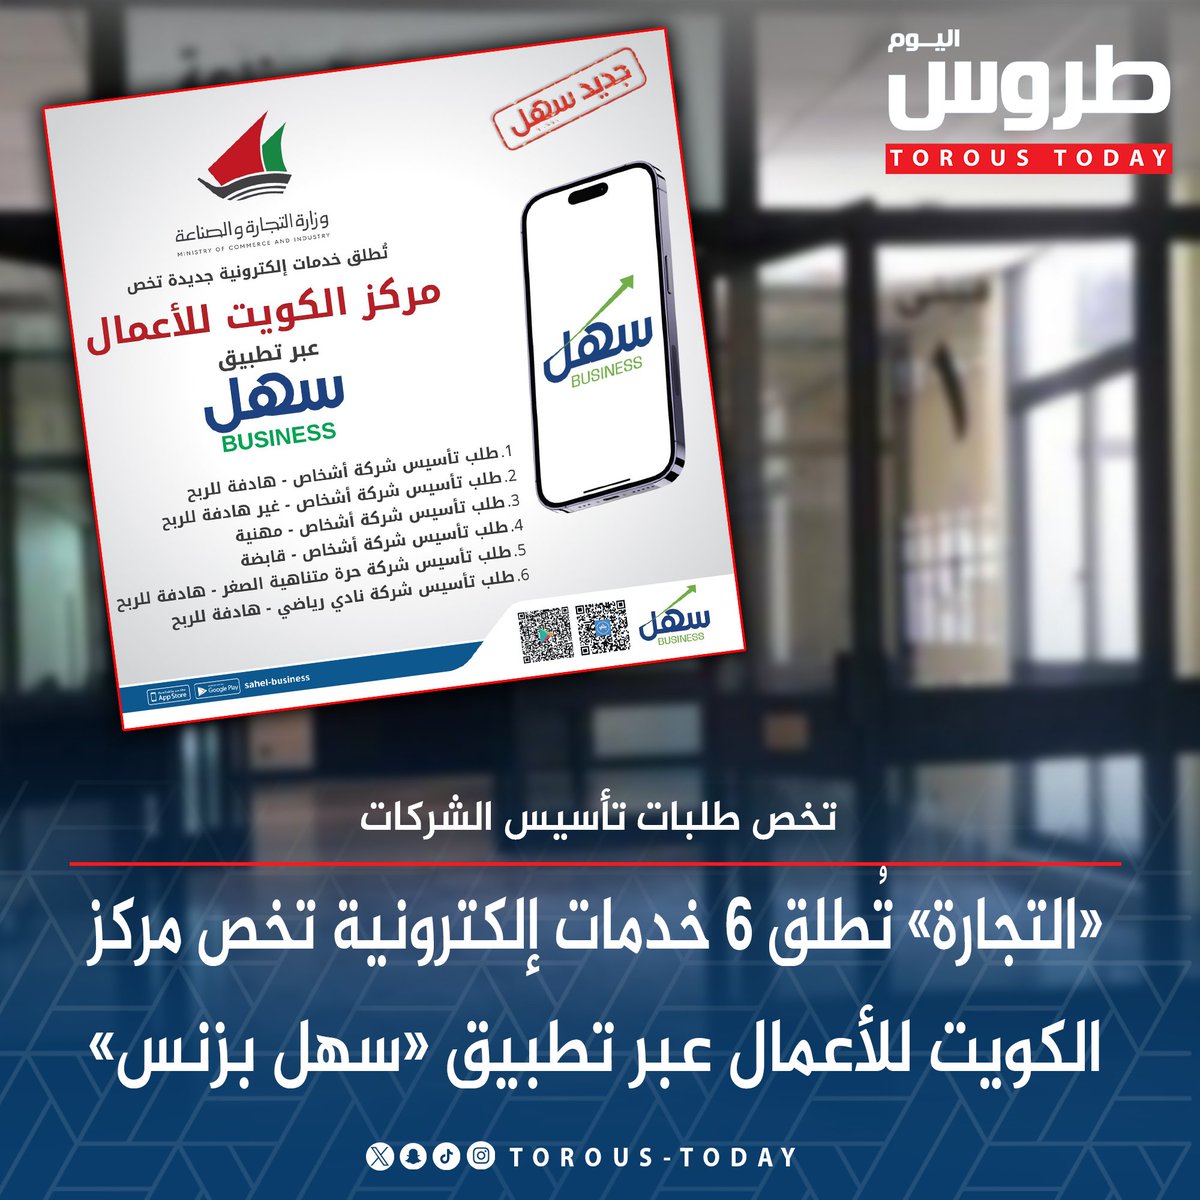 «التجارة» تُطلق 6 خدمات إلكترونية تخص مركز الكويت للأعمال عبر تطبيق «#سهل_بزنس» • تخص طلبات تأسيس الشركات #طروس_اليوم @mocikw @sahelkw